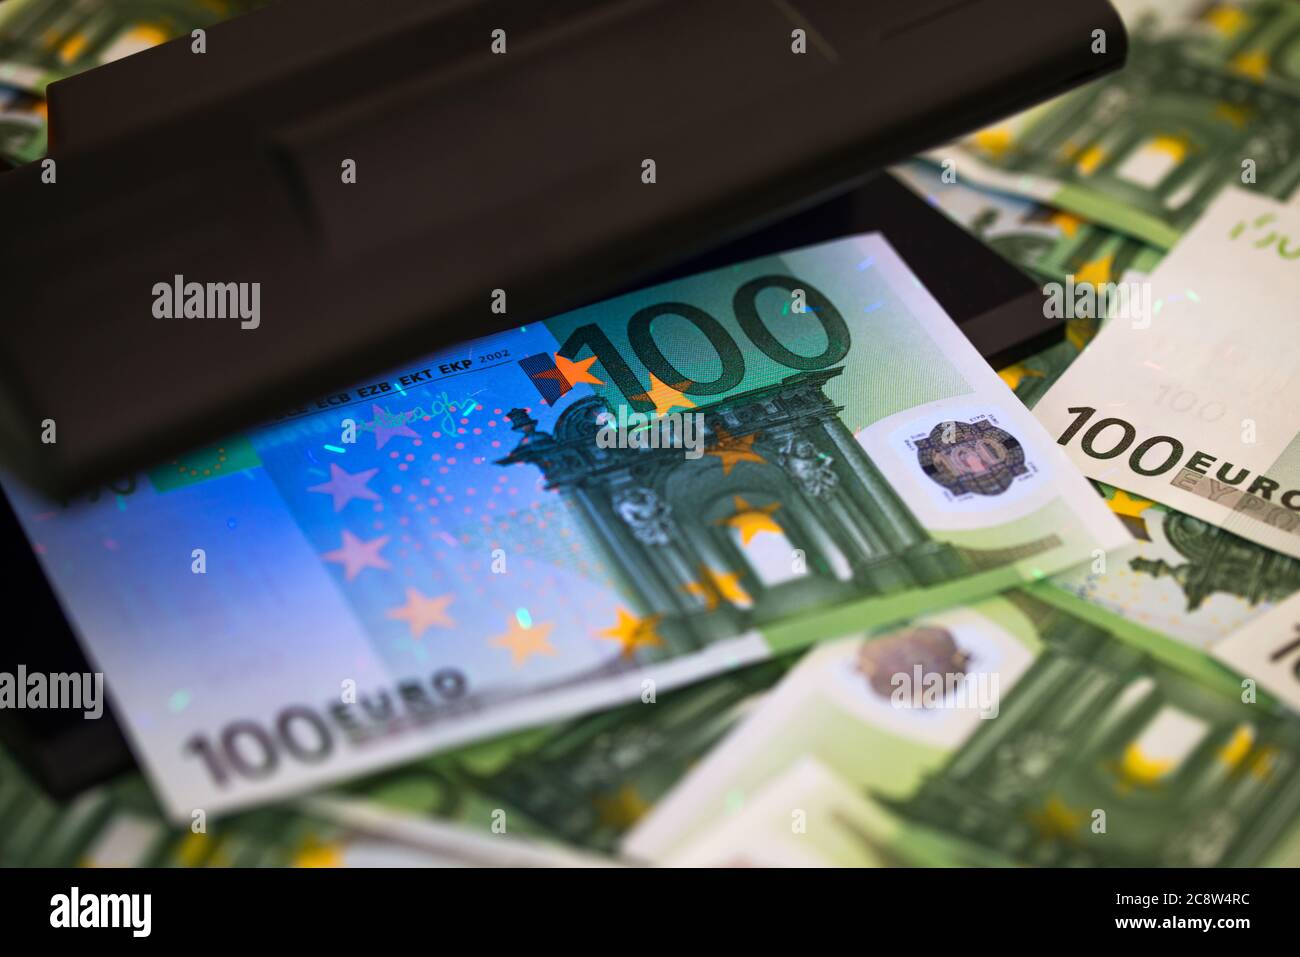 Controllo autenticazione banconote in euro in luci uv, concetto finanziario e bancario Foto Stock